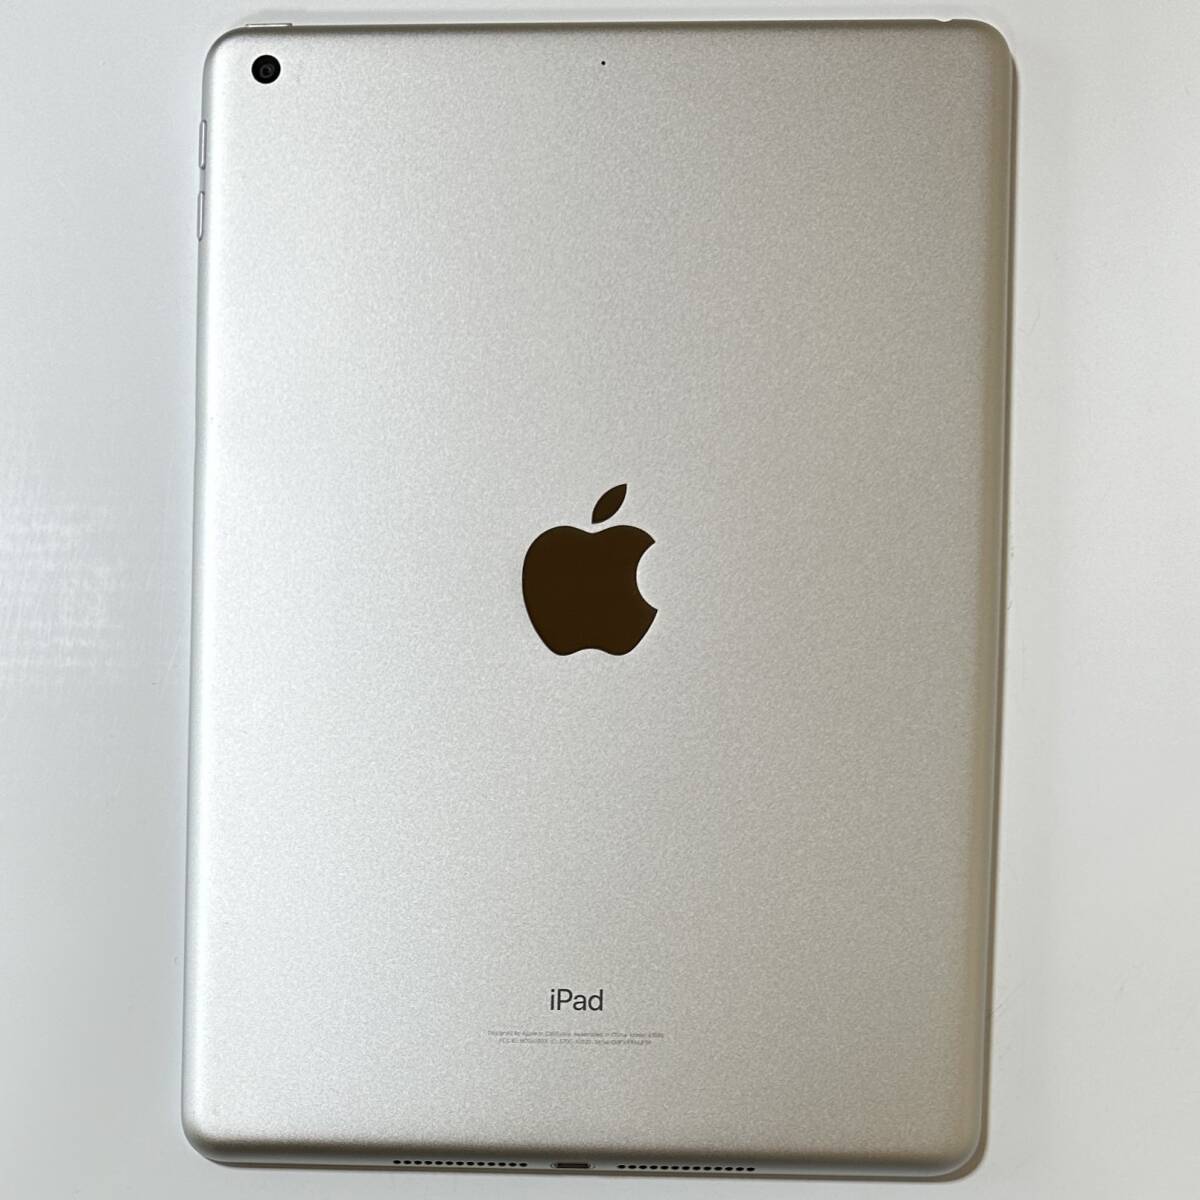 Apple iPad ( no. 6 поколение ) серебряный 32GB MR7G2J/A Wi-Fi модель iOS17.4.1 Acty беж .n разблокирован 